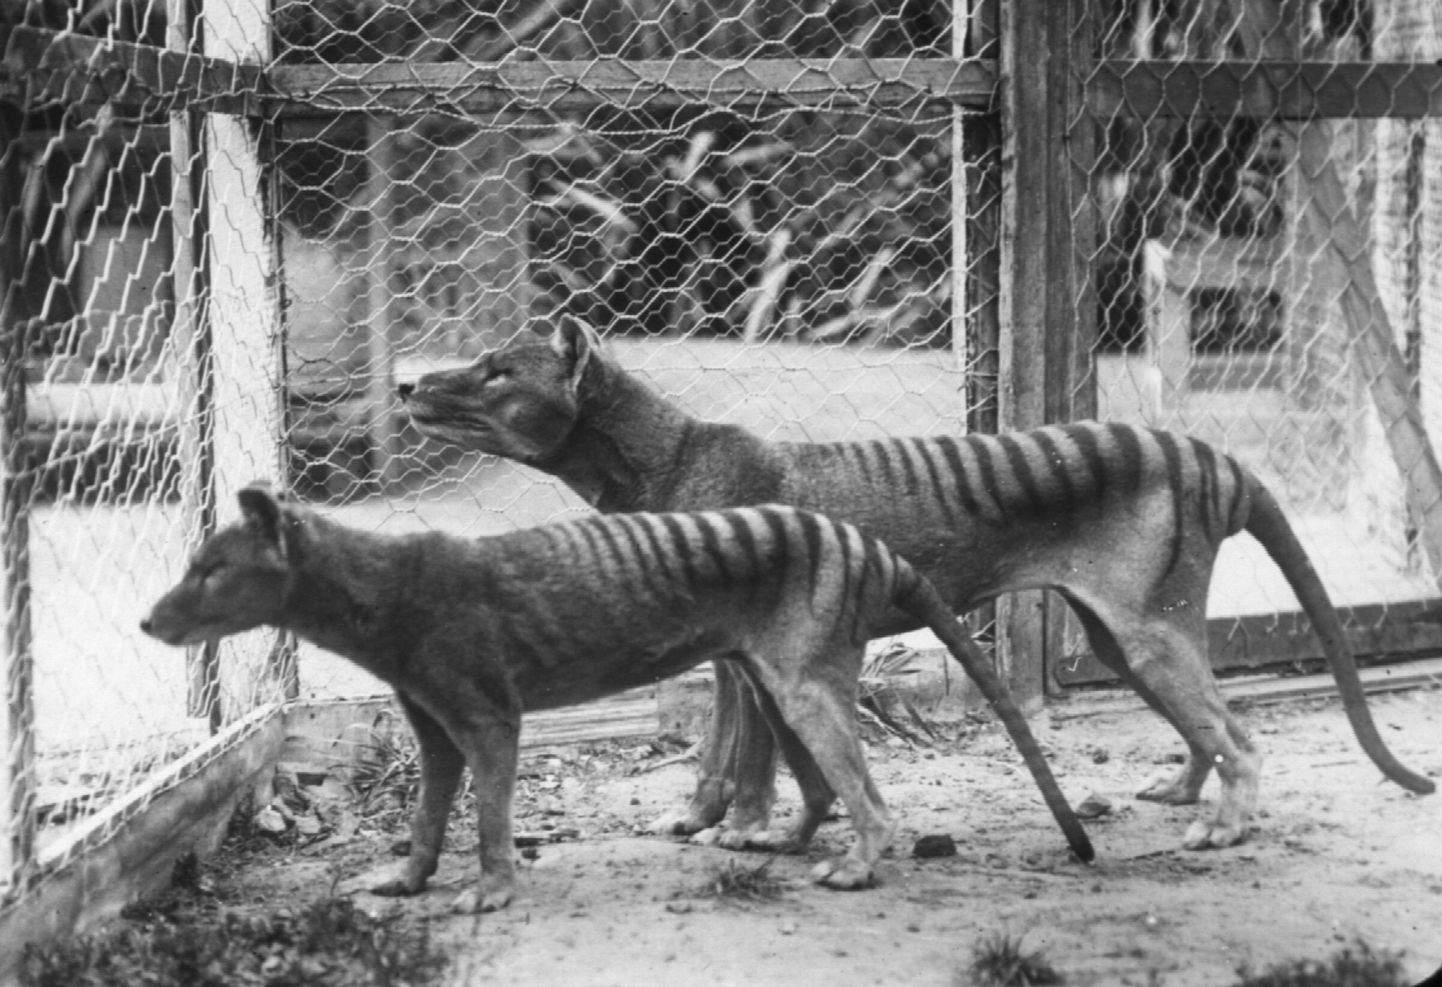 Kukkurhundid Tasmaanias Hobarti loomaaias 20. sajandi alguses